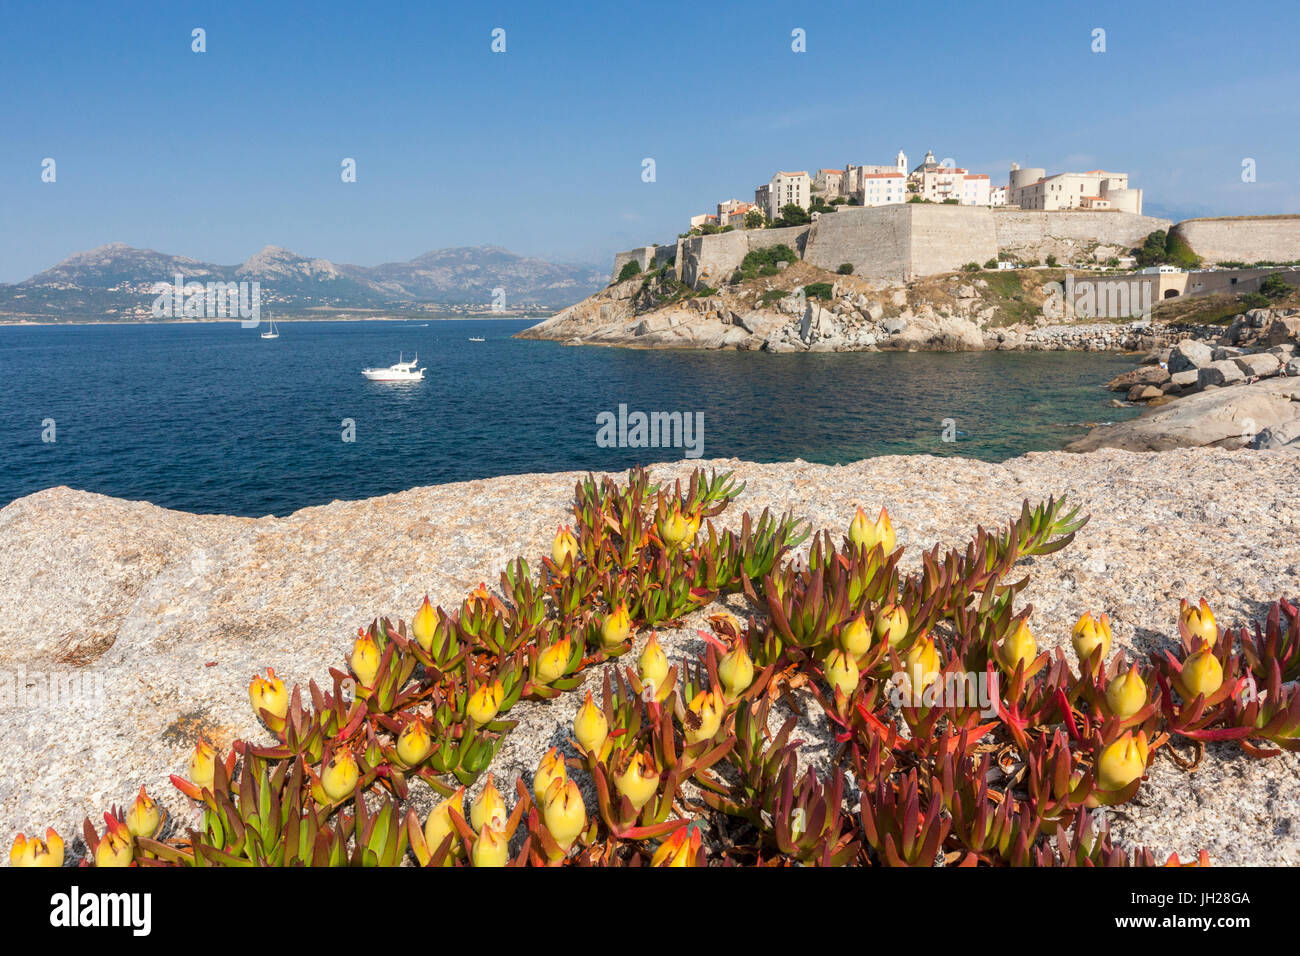 Blumen auf Felsen umrahmen die befestigte Zitadelle, umgeben durch das klare Meer, Calvi, Balagne Region, Korsika, Frankreich, mediterran Stockfoto